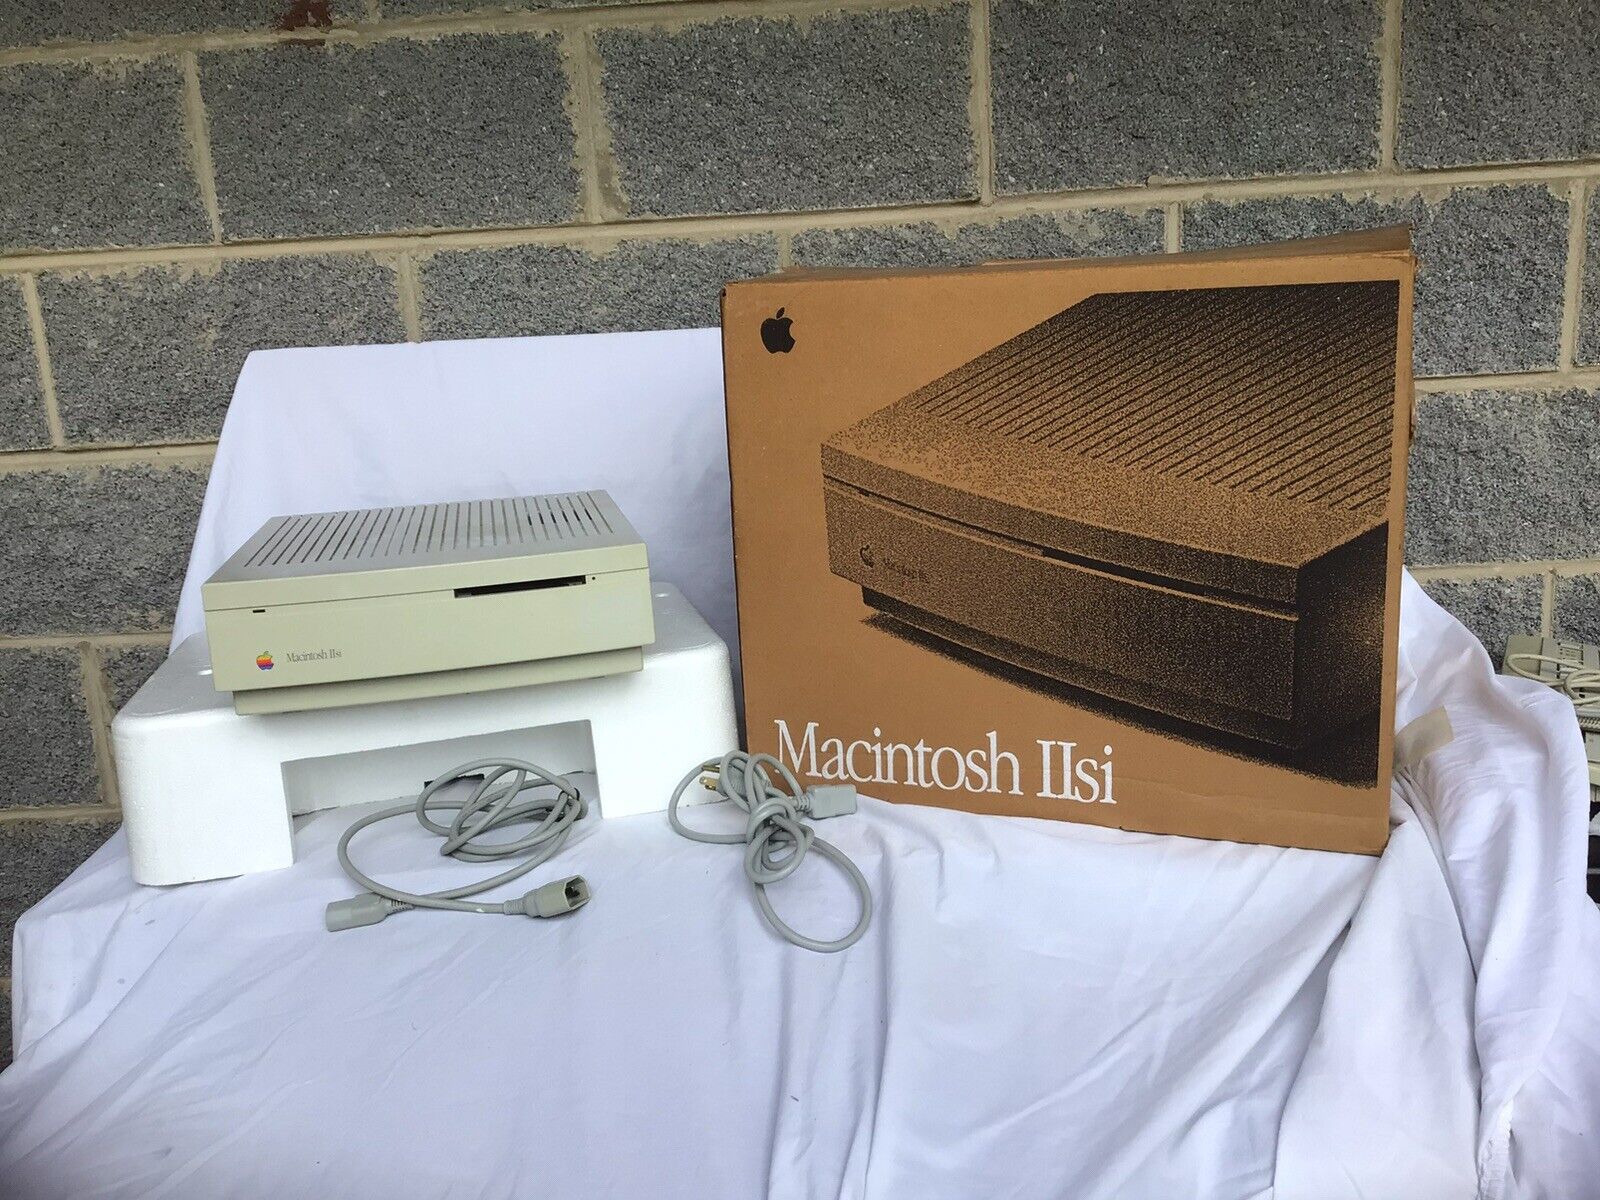 VINTAGE APPLE MACINTOSH IISi COMPUTER  & Keyboard In Original Box As-IS